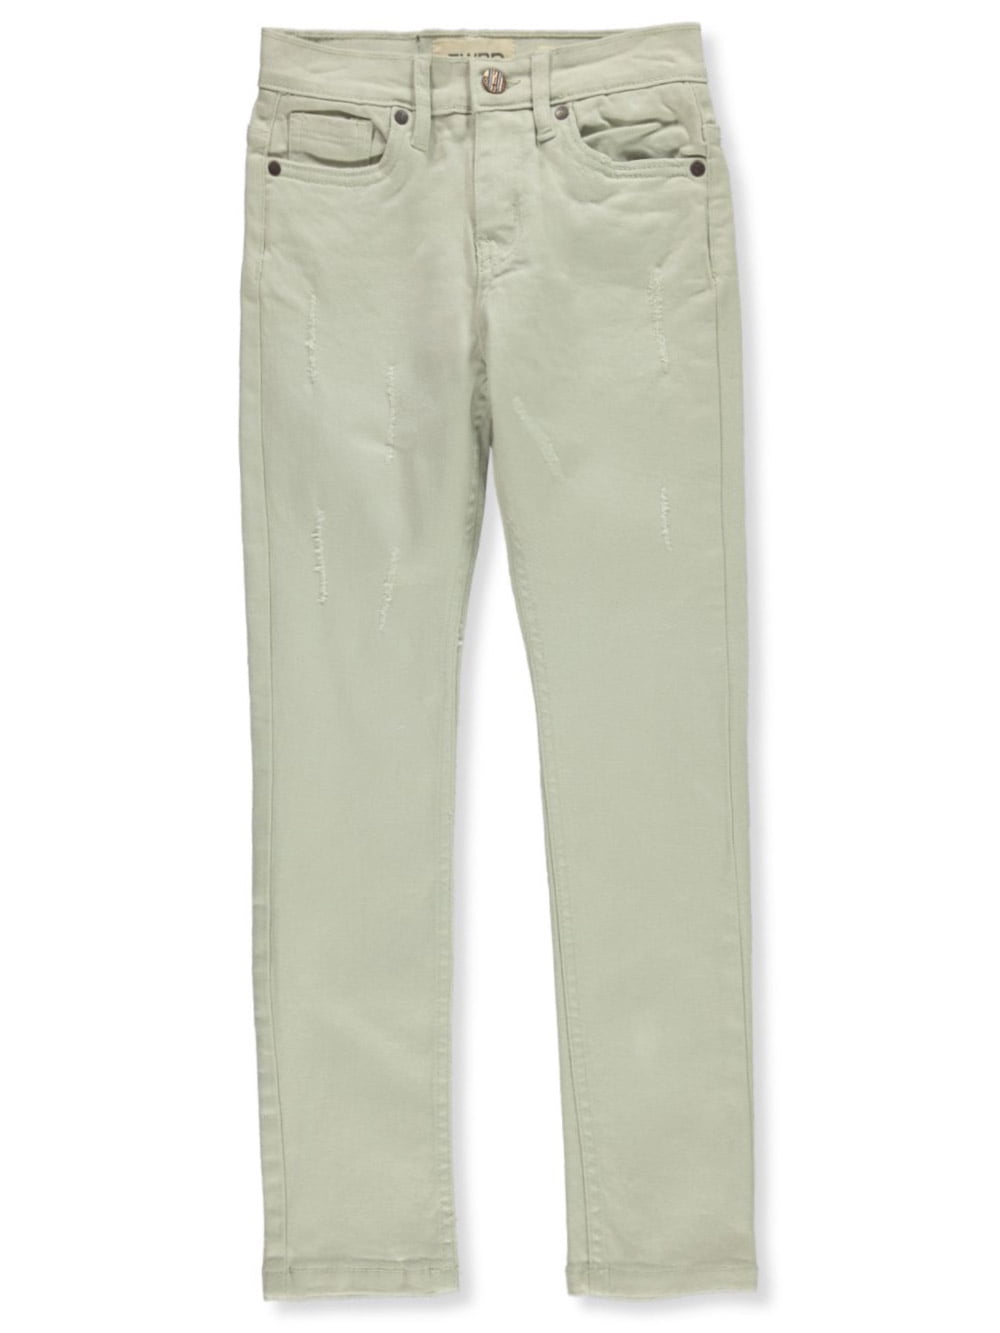 FWRD Boys' Regular Jeans - bone, 14 (Big Boys) - Walmart.com